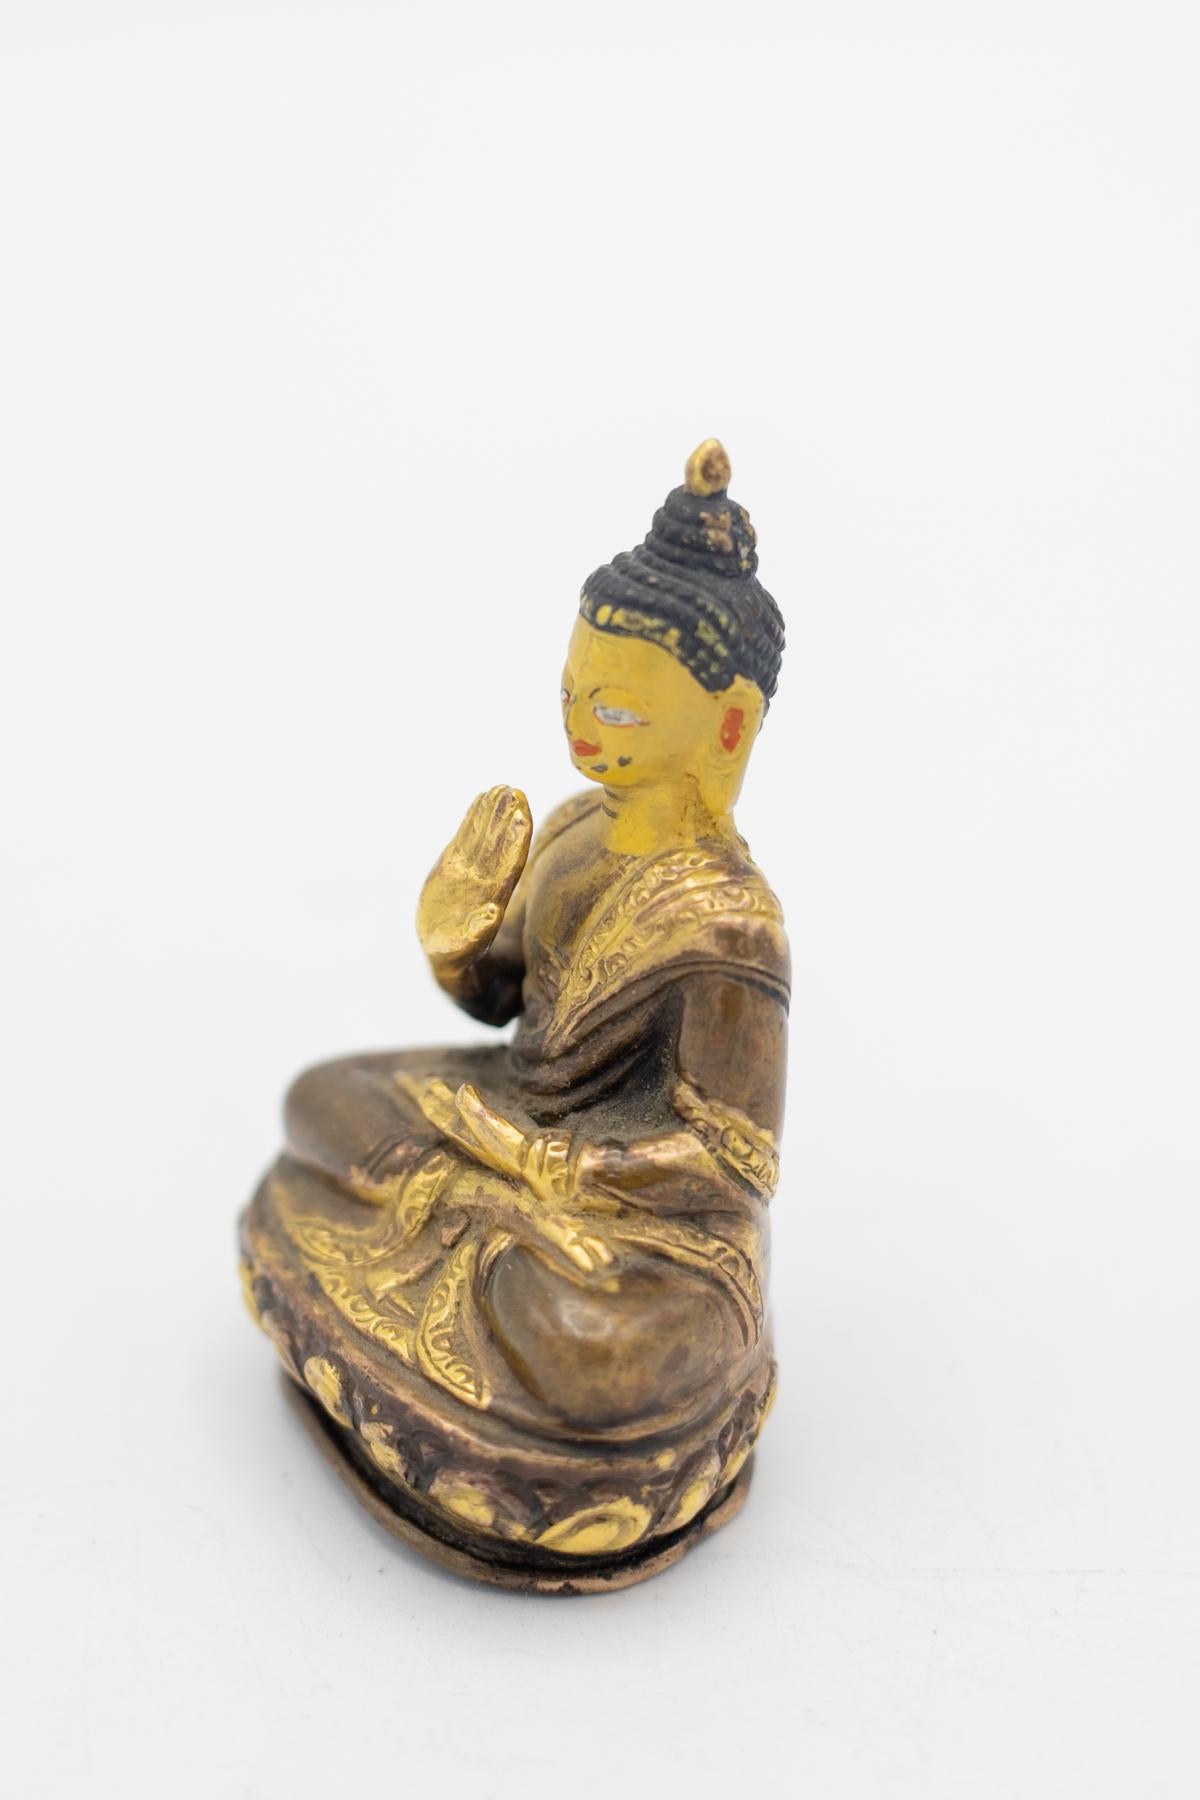 Seltene tibetische Bronzestatue aus dem 19. Jahrhundert, die den Buddha in segnender Haltung darstellt. Er wird mit einem glücklichen und entspannten Ausdruck dargestellt, wie der Blick eines sorglosen Menschen, der Gutes tut und sich über die